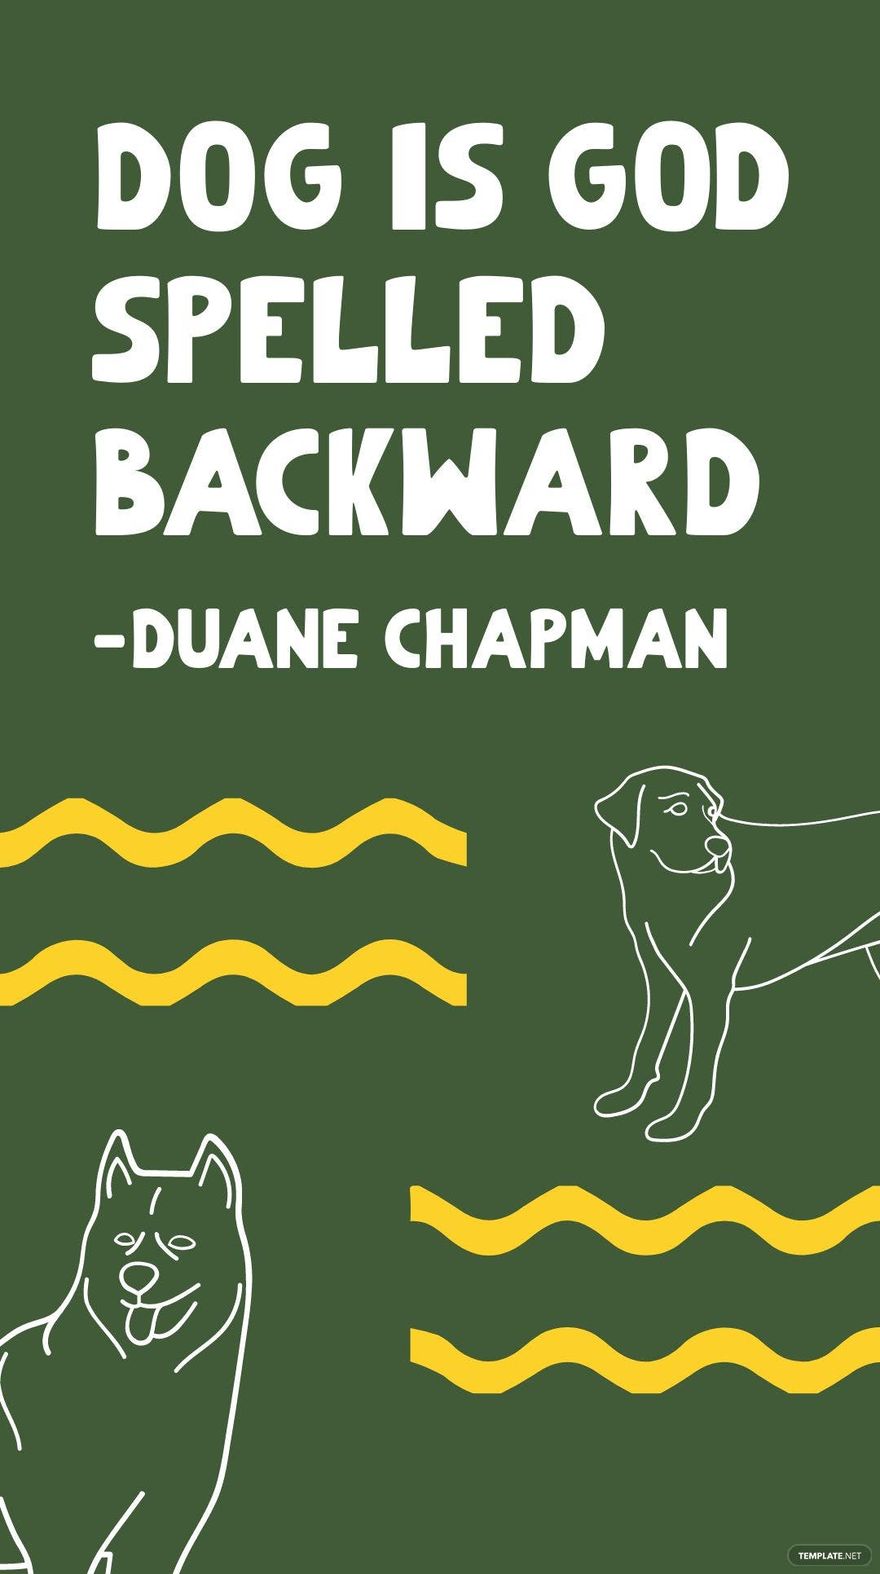 Duane Chapman - Dog is God spelled backward in JPG